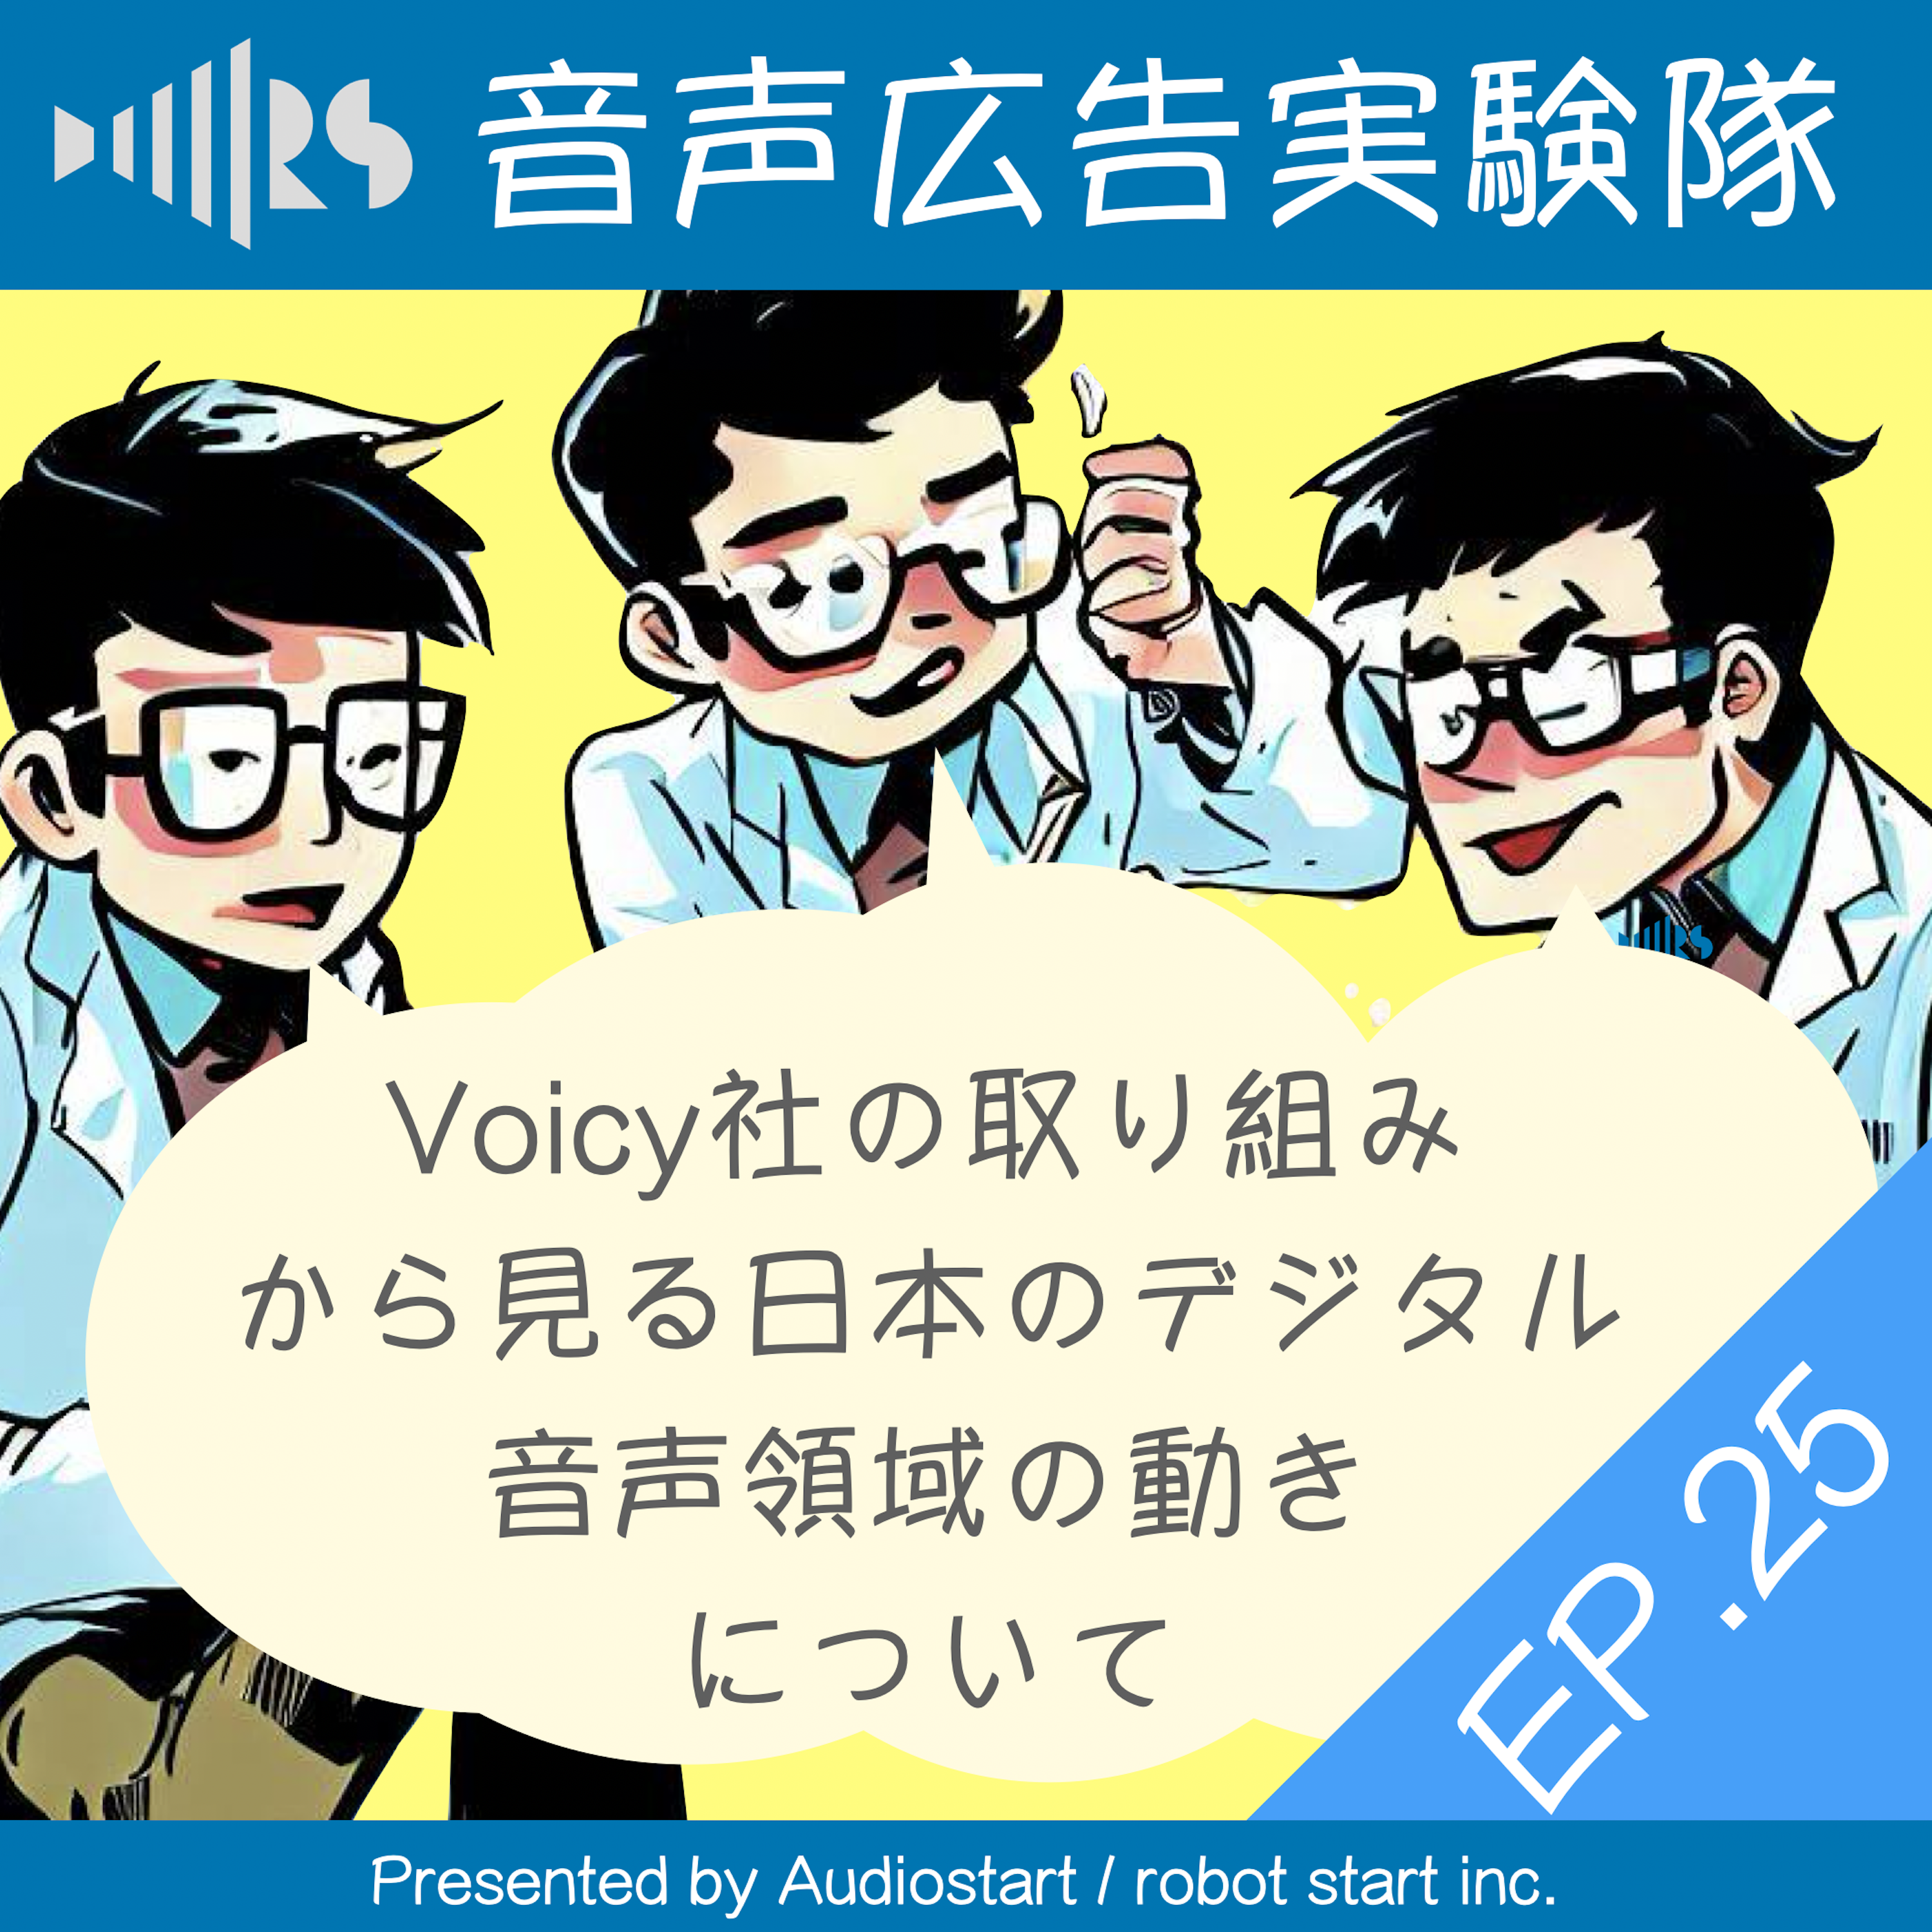 EP.25 Voicy社の取り組みから見る日本のデジタル音声領域の動きについて